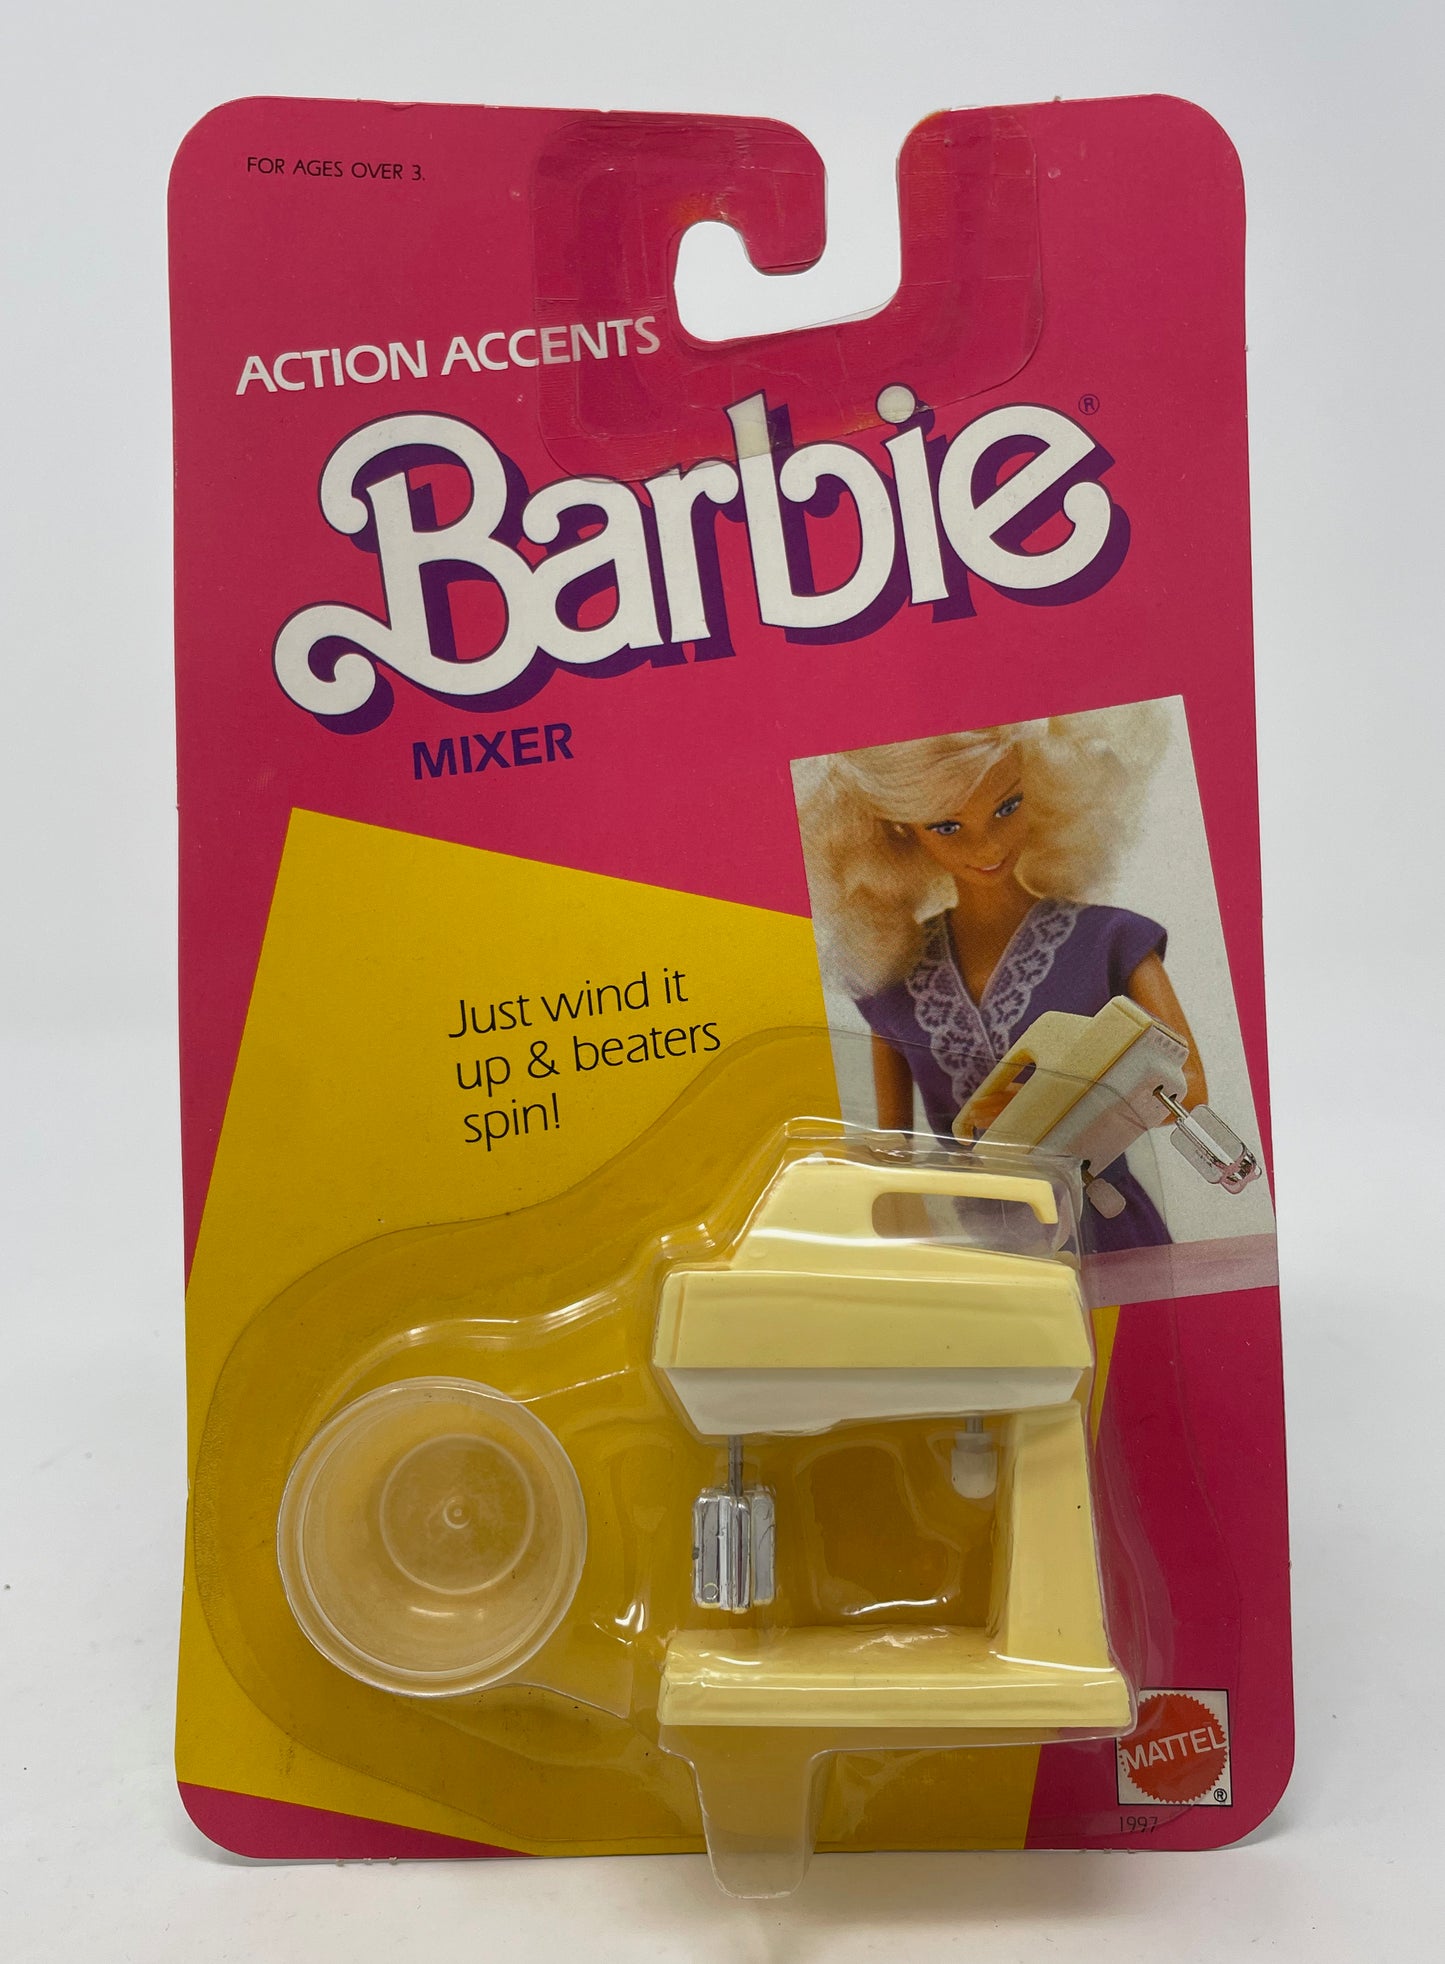 BARBIE - ACTION ACCENTS MIXER #1997 - MATTEL 1986